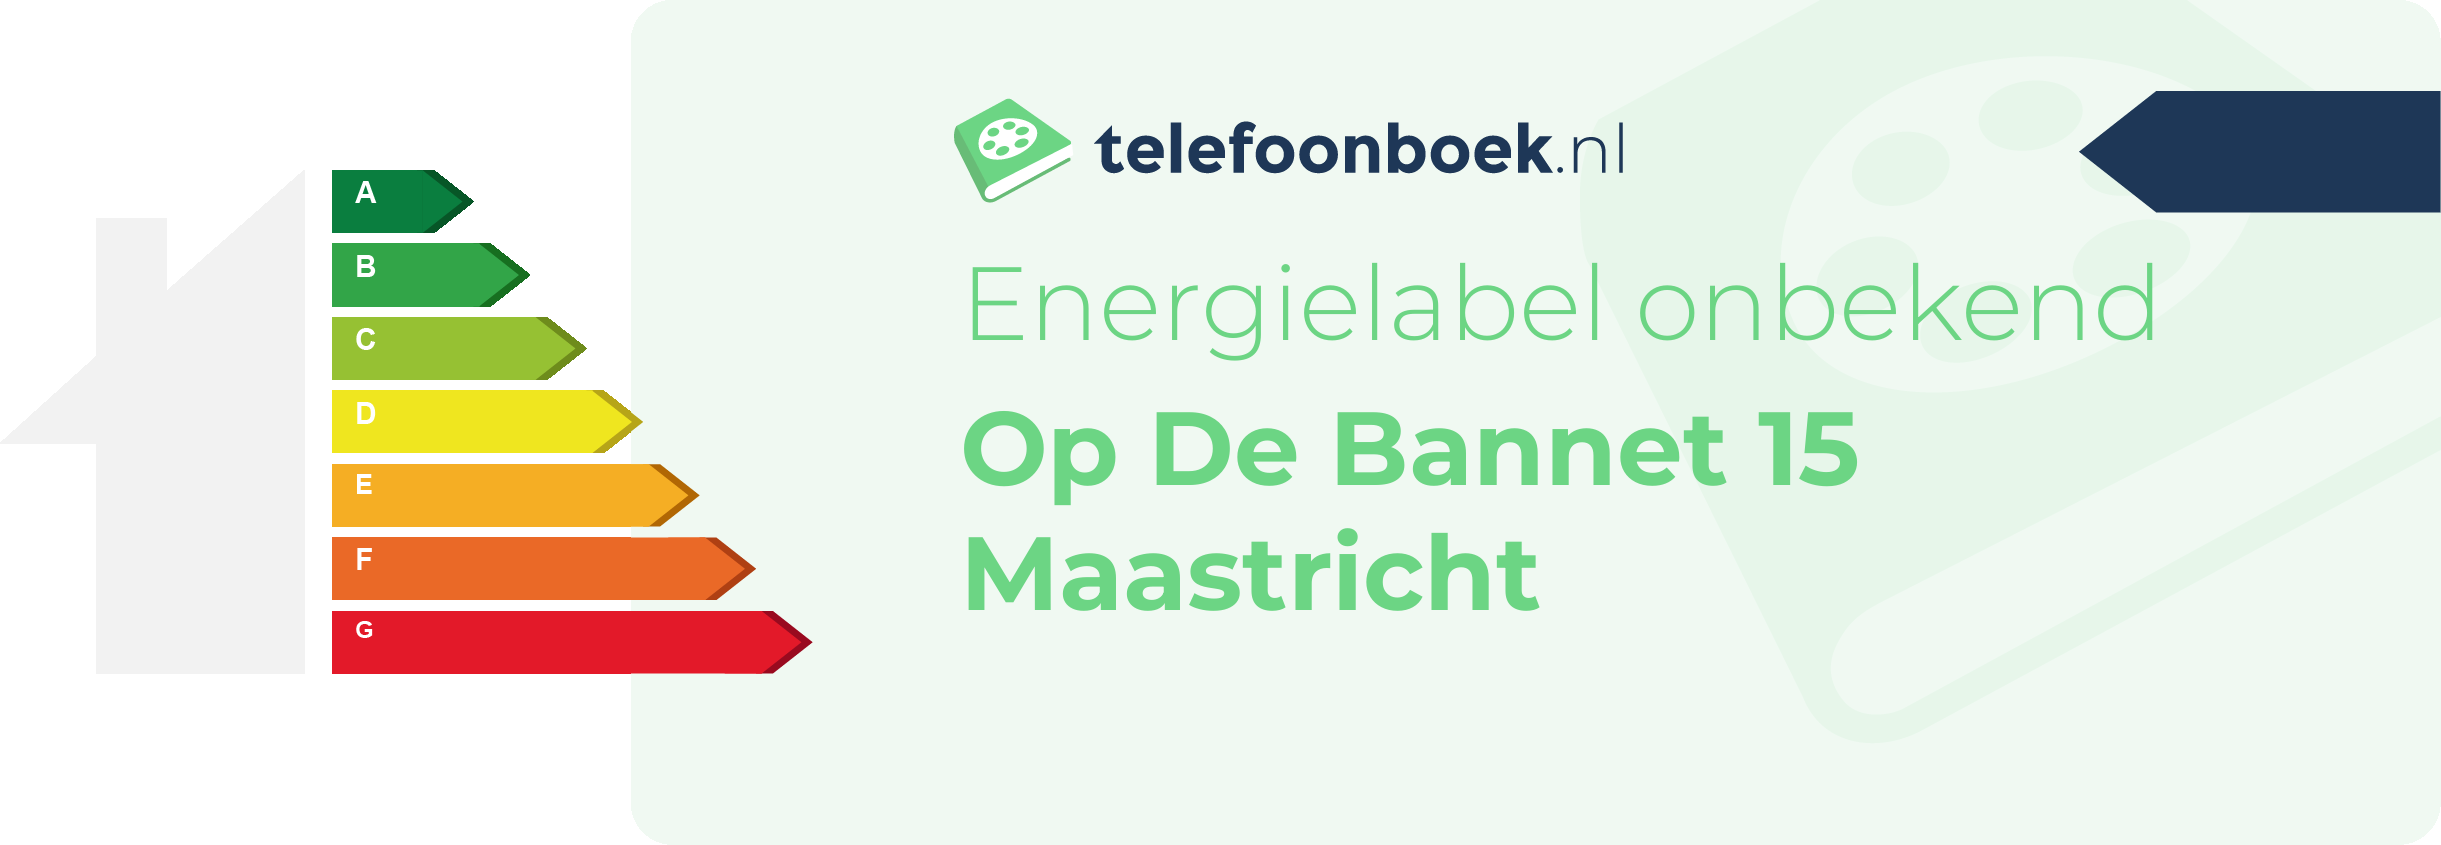 Energielabel Op De Bannet 15 Maastricht